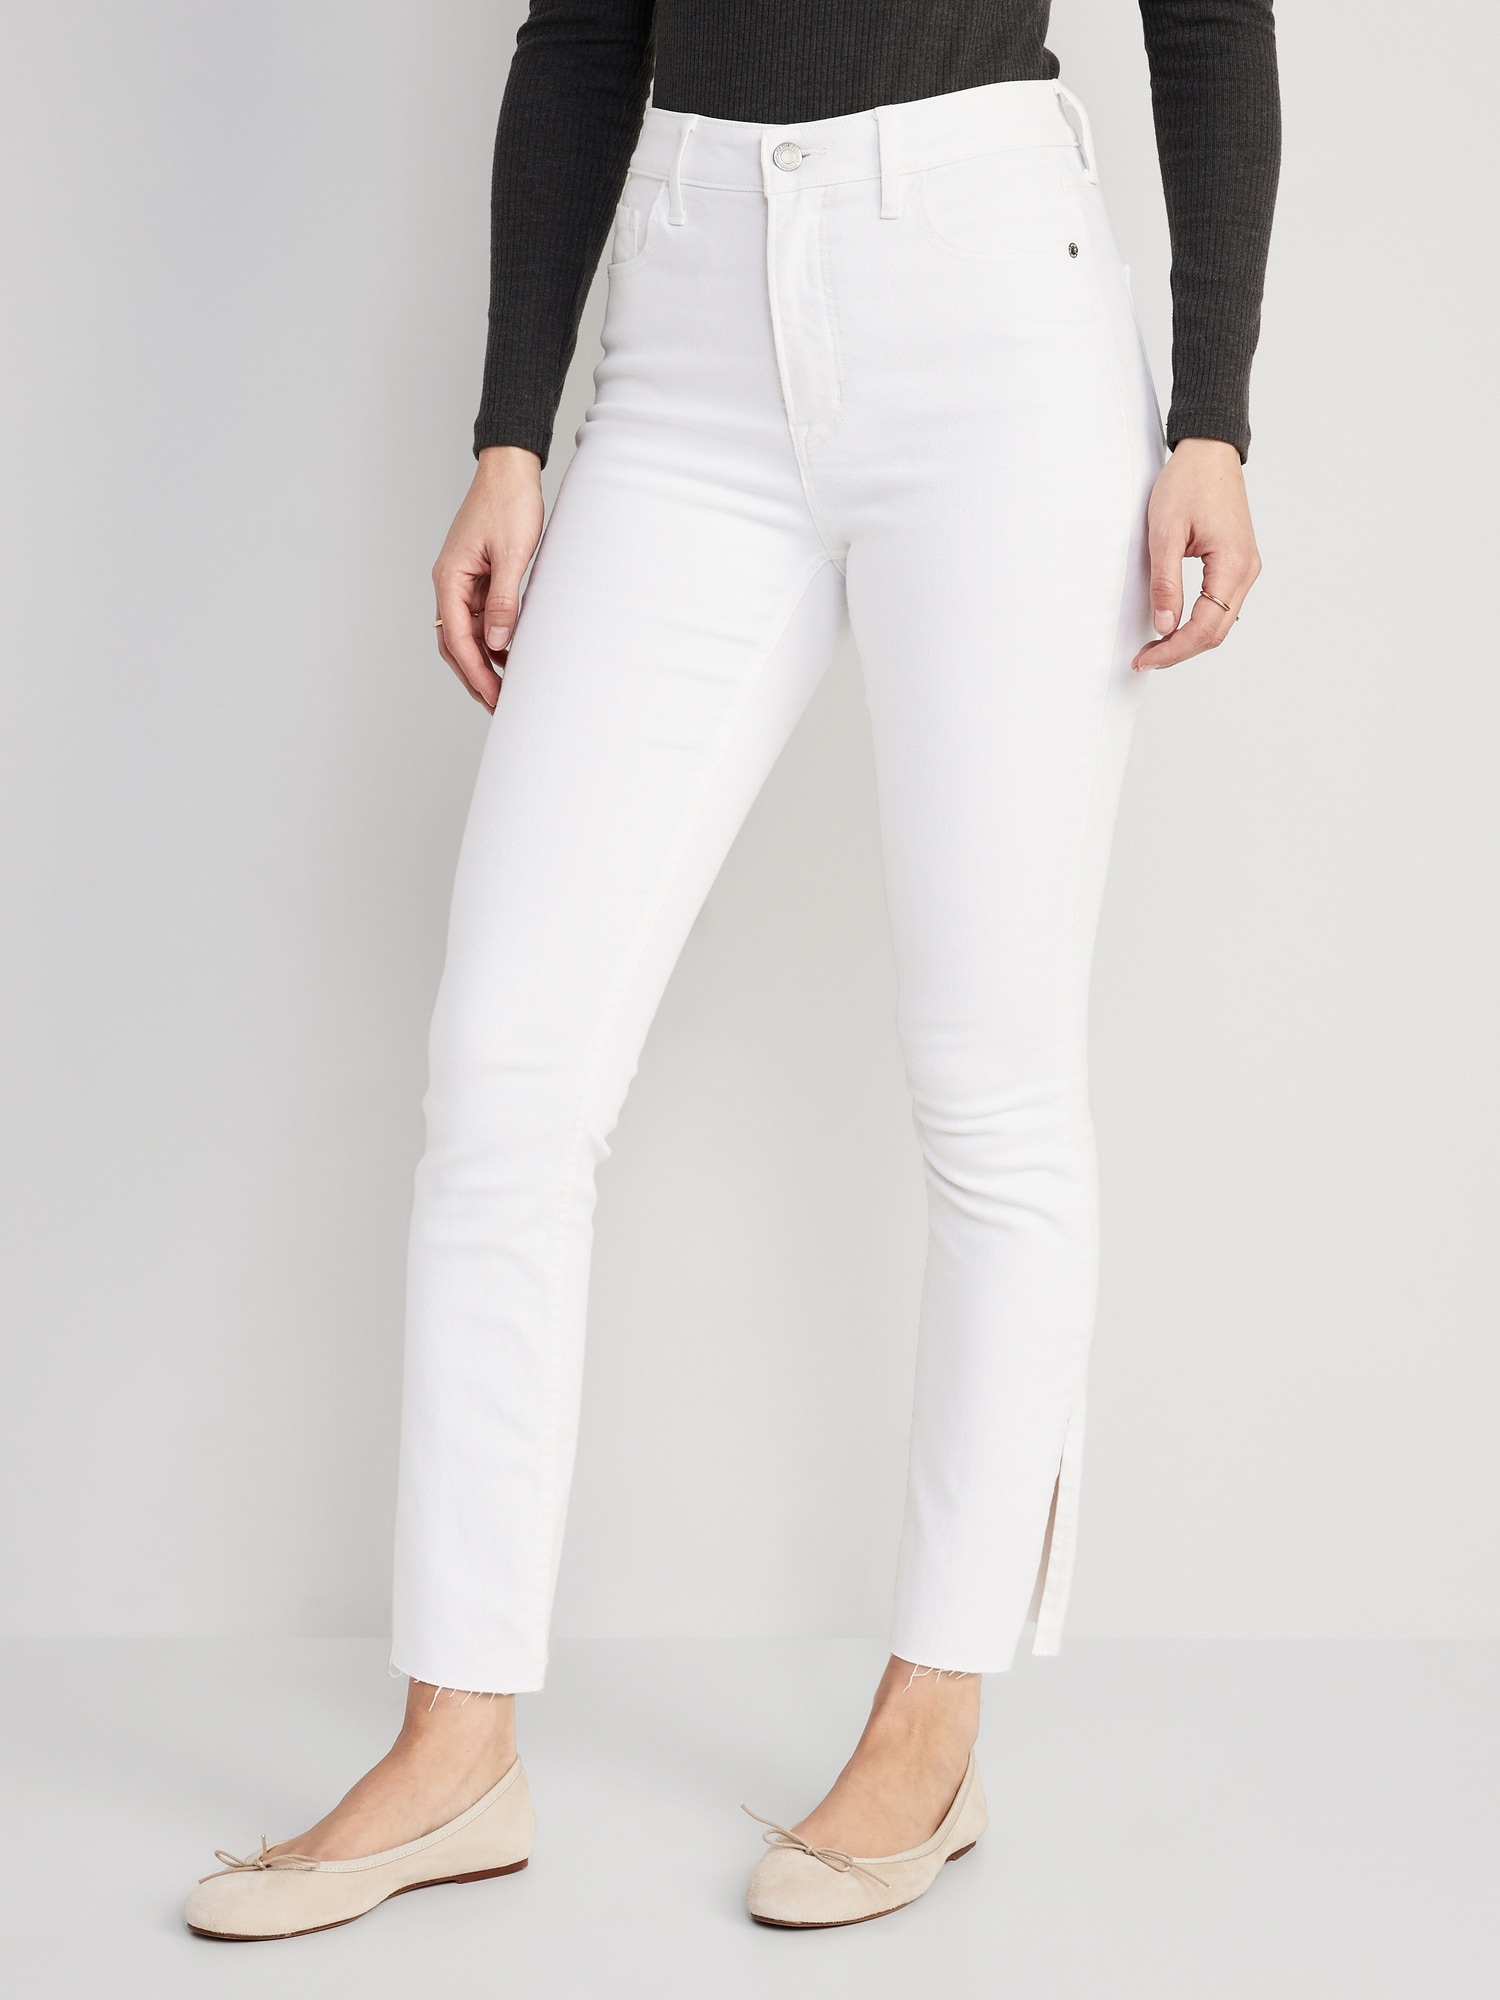 Women's High-Rise White Super Skinny Jeans, Women's Bottoms